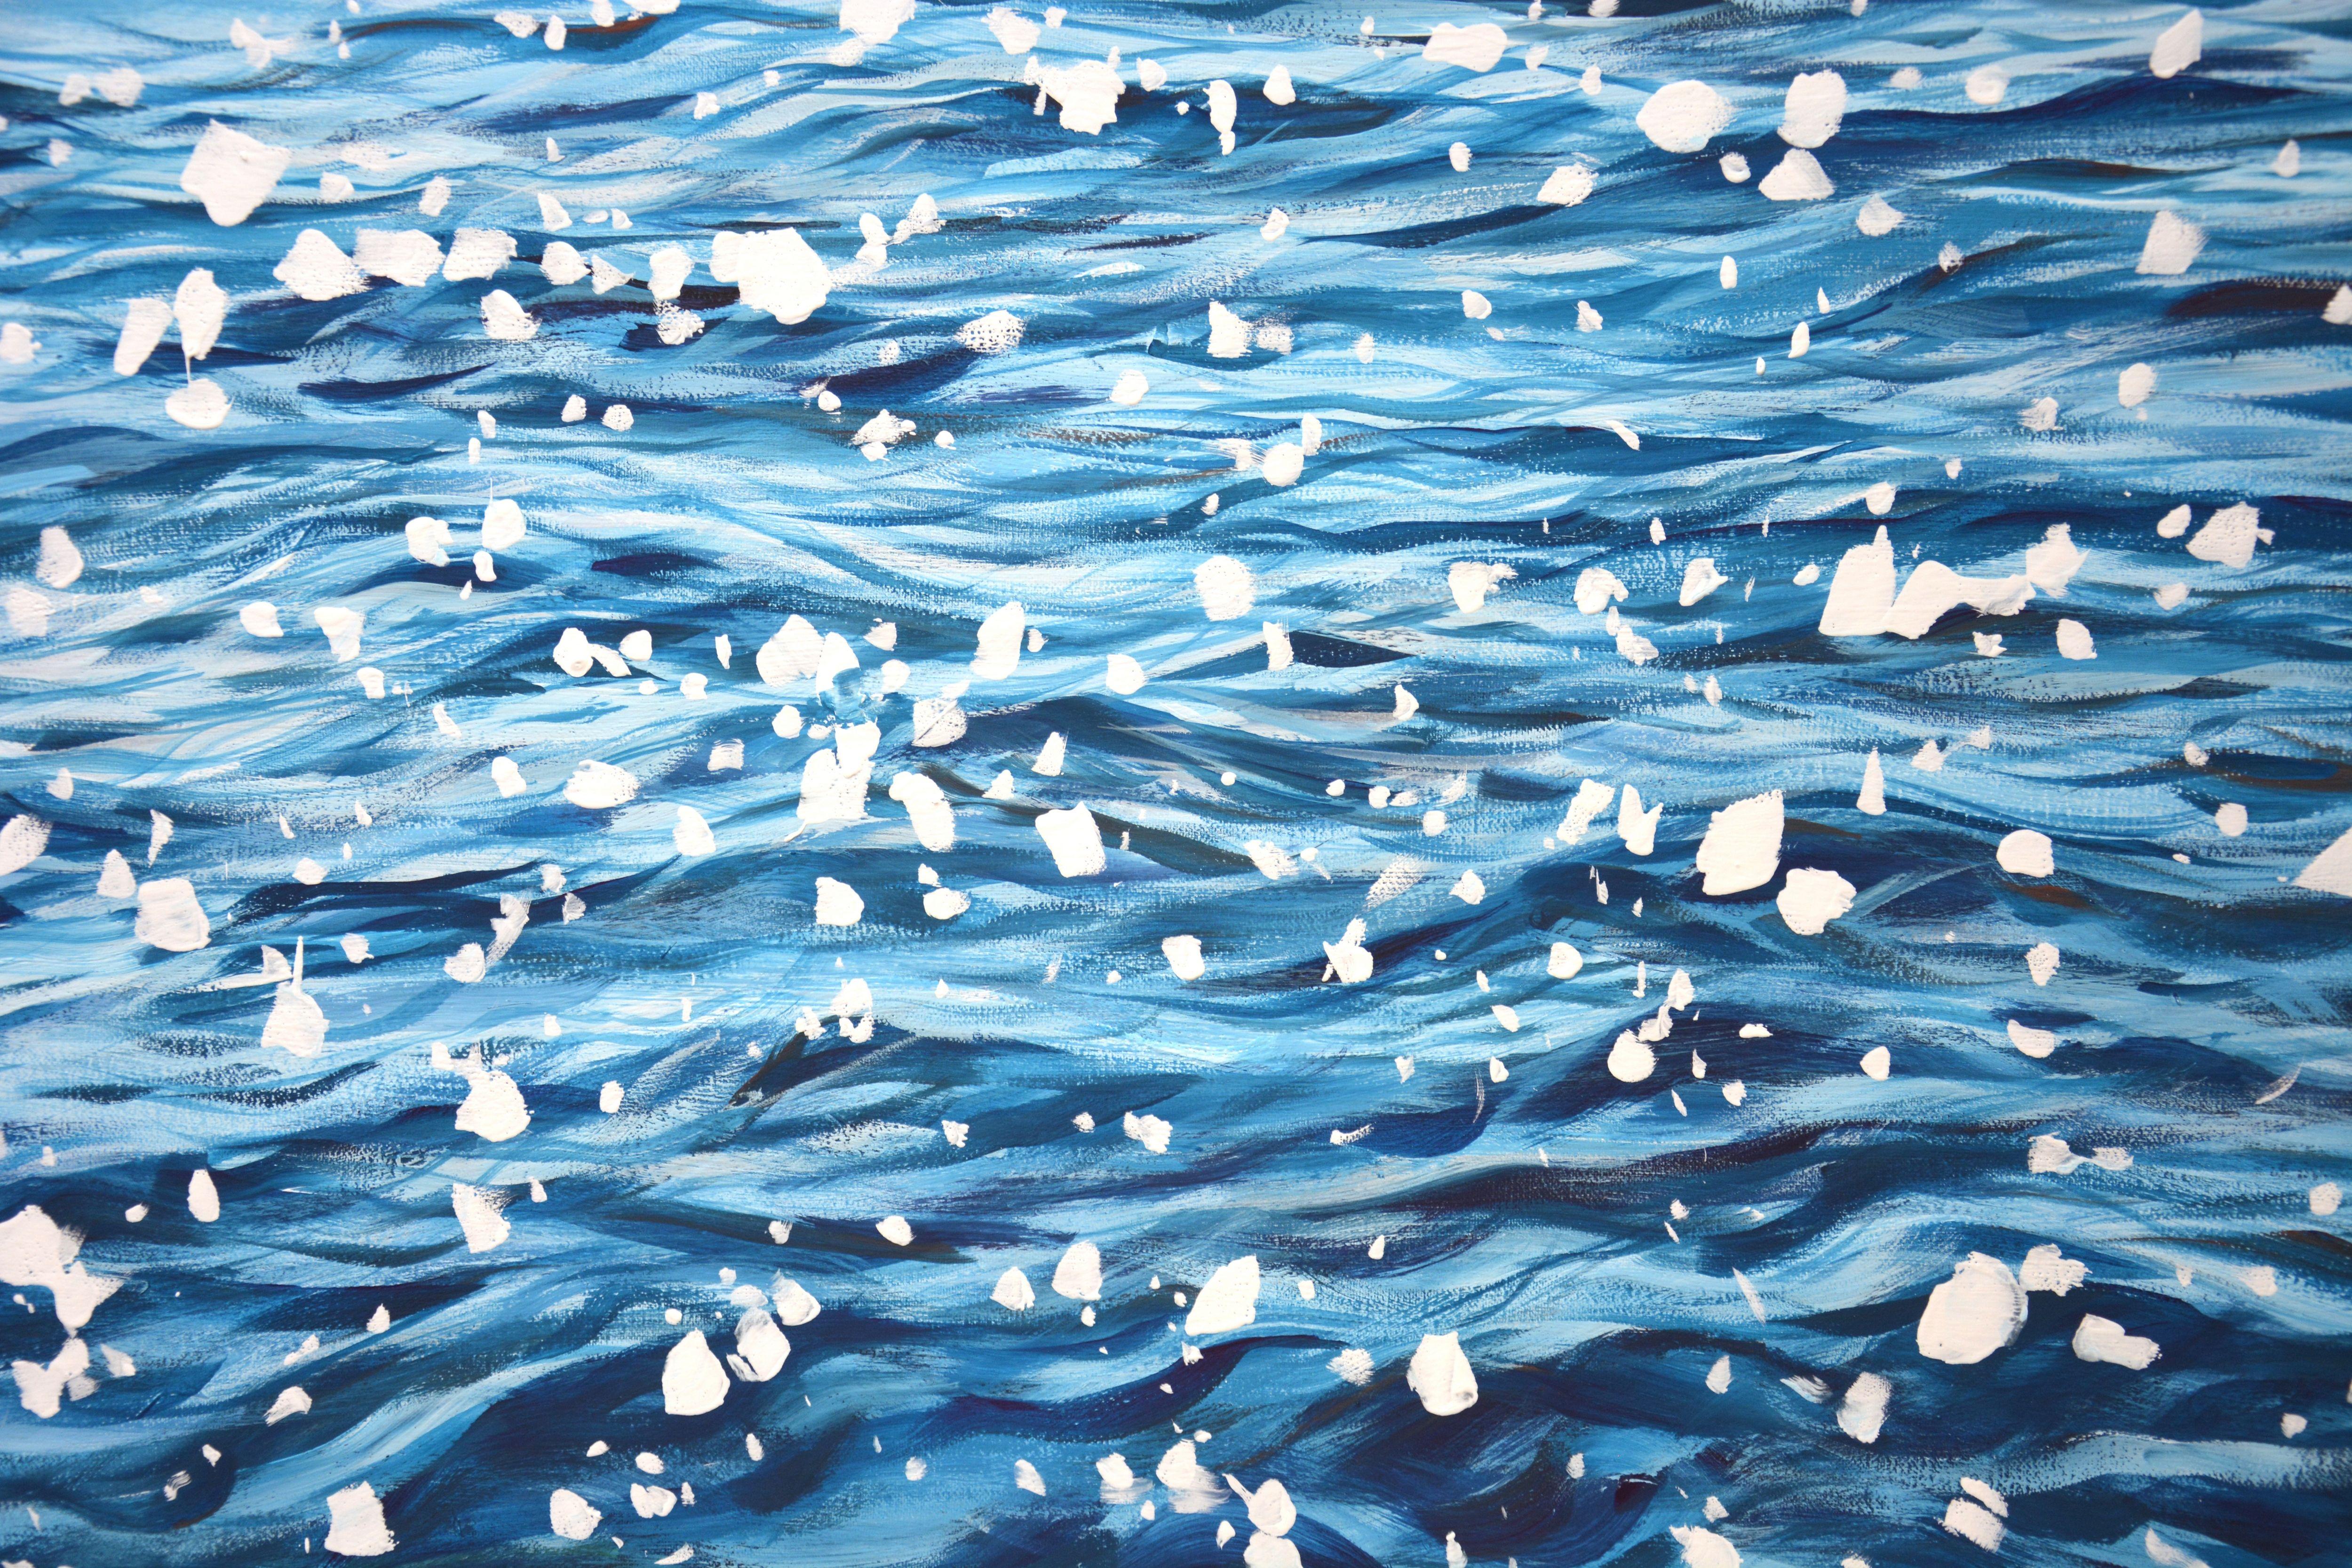 Éblouissement sur l'eau bleue. Les reflets de l'océan, les petites vagues, les reflets du soleil sur l'eau créent une atmosphère de détente et de romantisme. Réalisé dans le style du réalisme. Fait partie d'une série permanente de paysages marins.